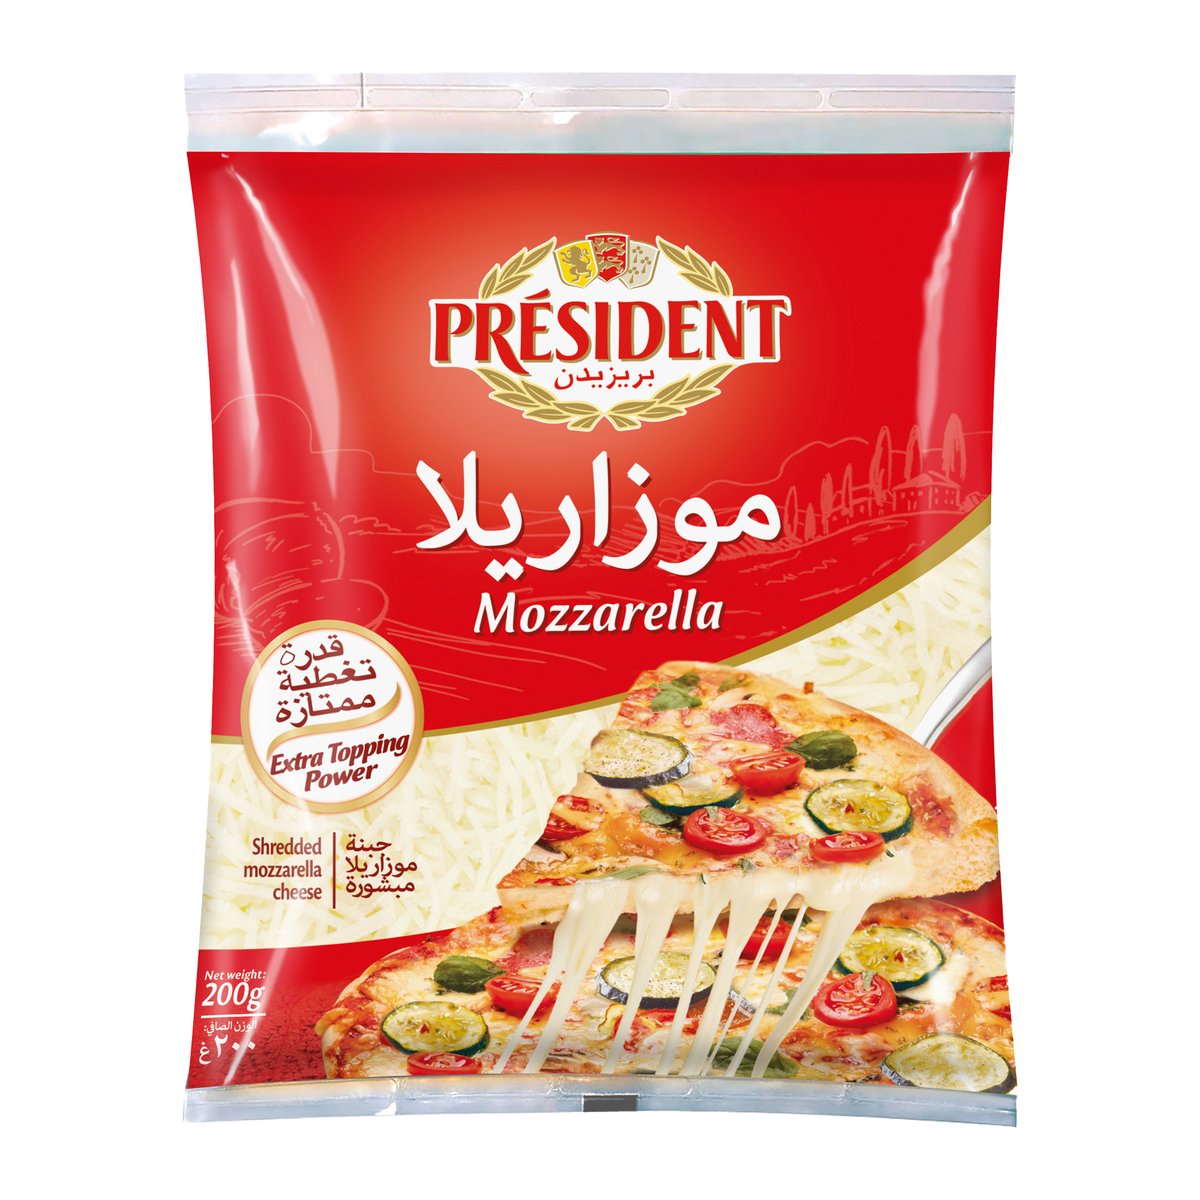 اشتري قم بشراء بريزيدن جبنة موزاريلا 200 جم Online at Best Price من الموقع - من لولو هايبر ماركت Grated Cheese في مصر